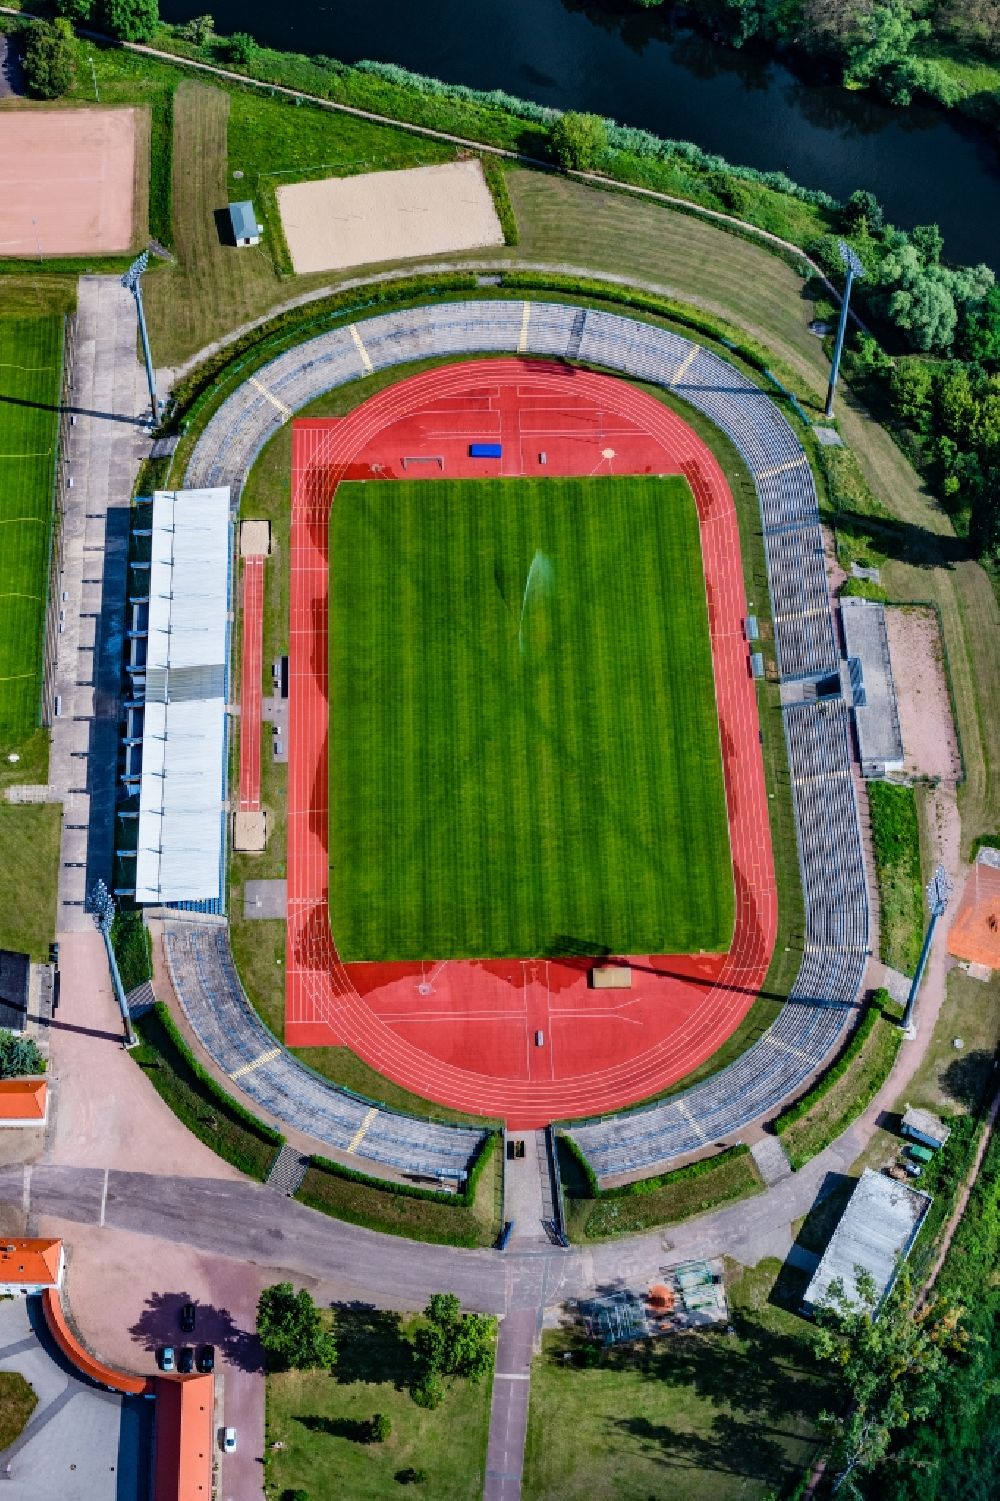 Luftbild Dessau - Sportstätten-Gelände der Arena des Stadion Paul-Greifzu-Stadion in Dessau im Bundesland Sachsen-Anhalt, Deutschland